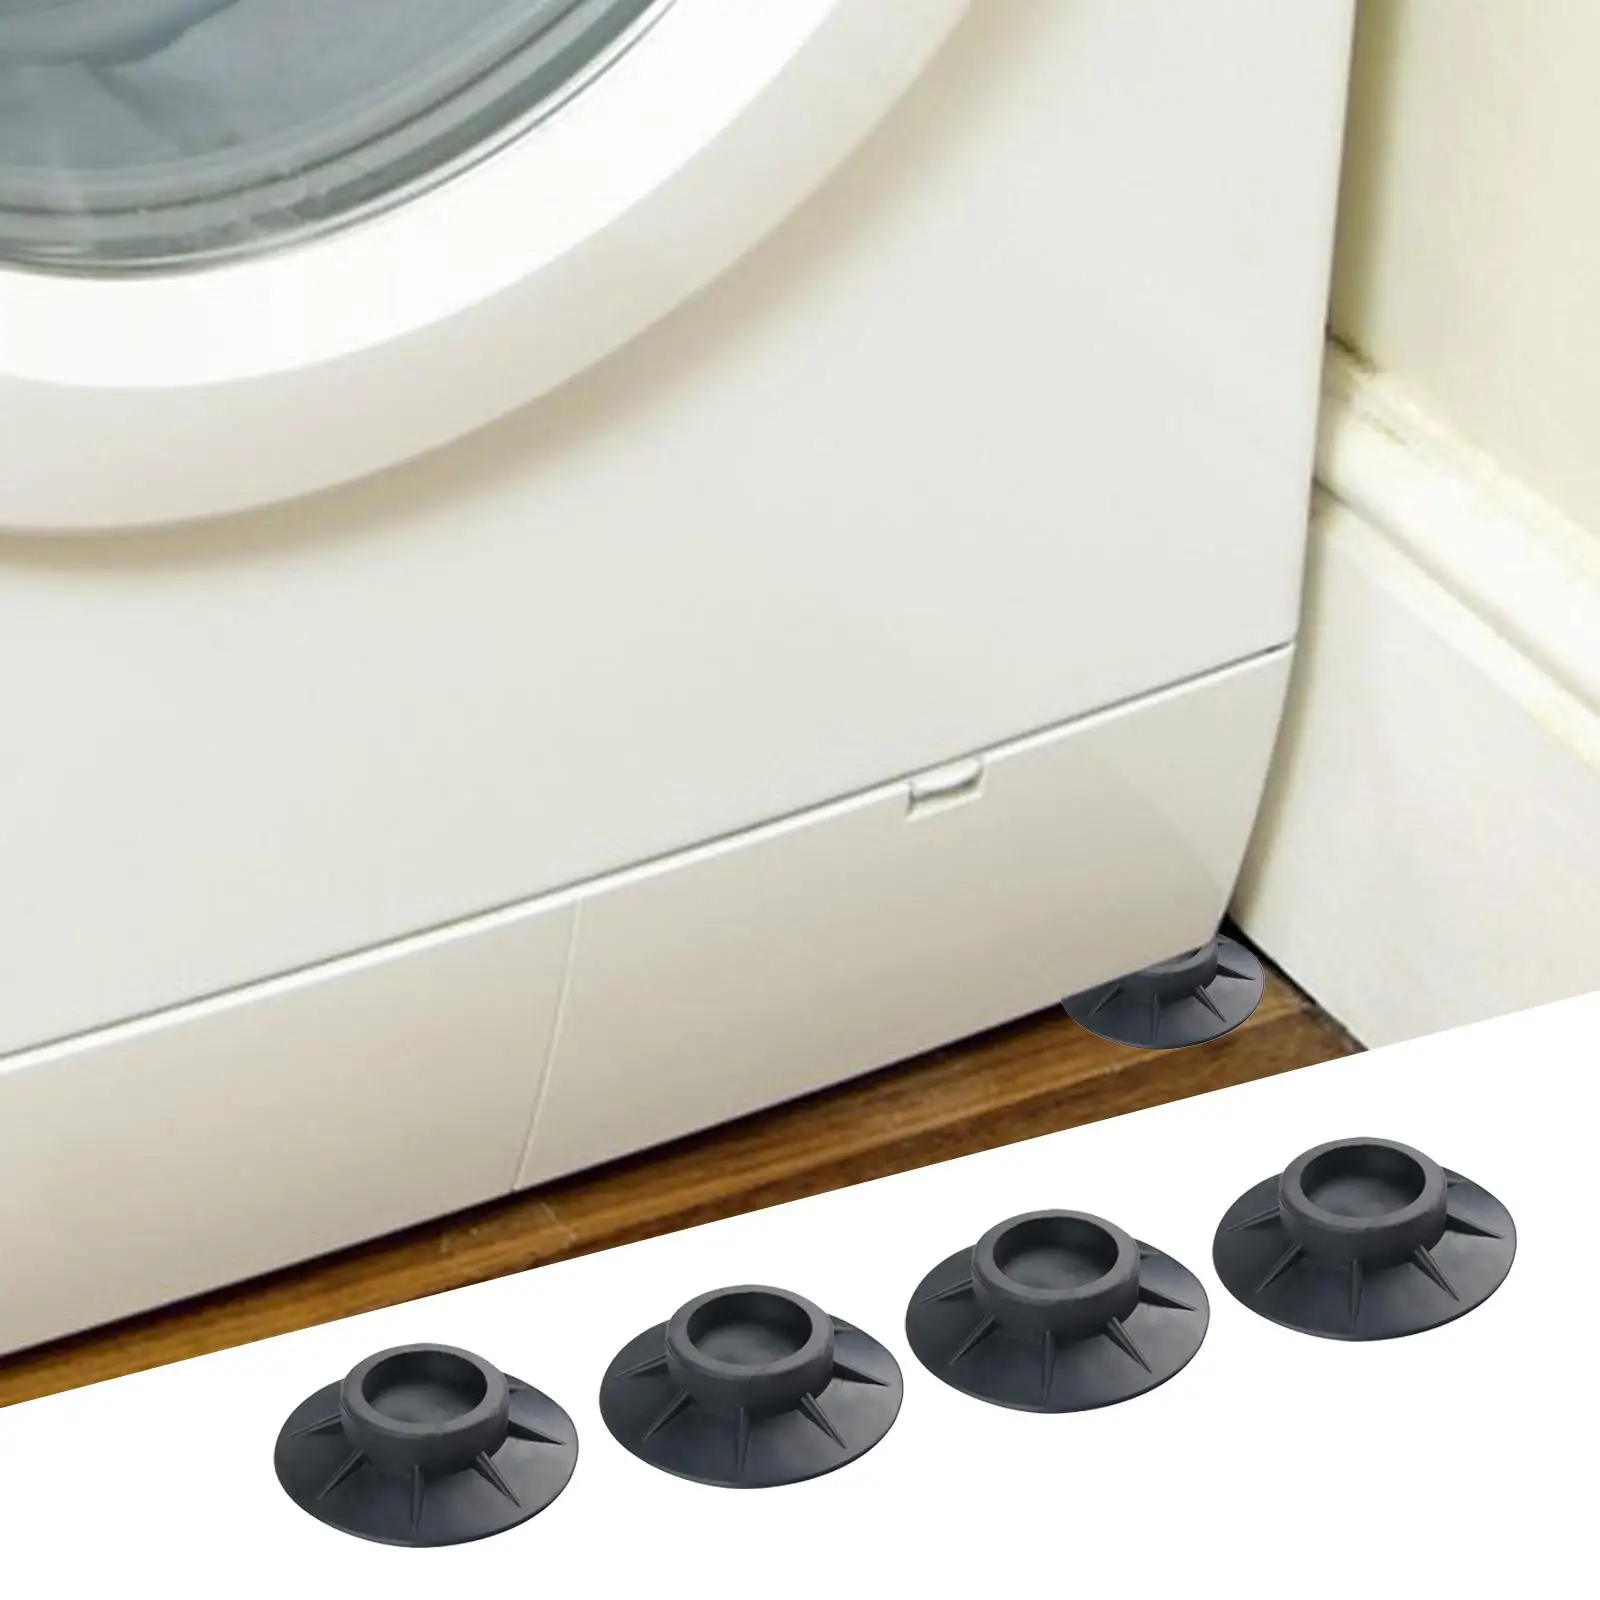 Washing Machine Feet Noise Dampening for Fridge Refrigerator Dishwashers